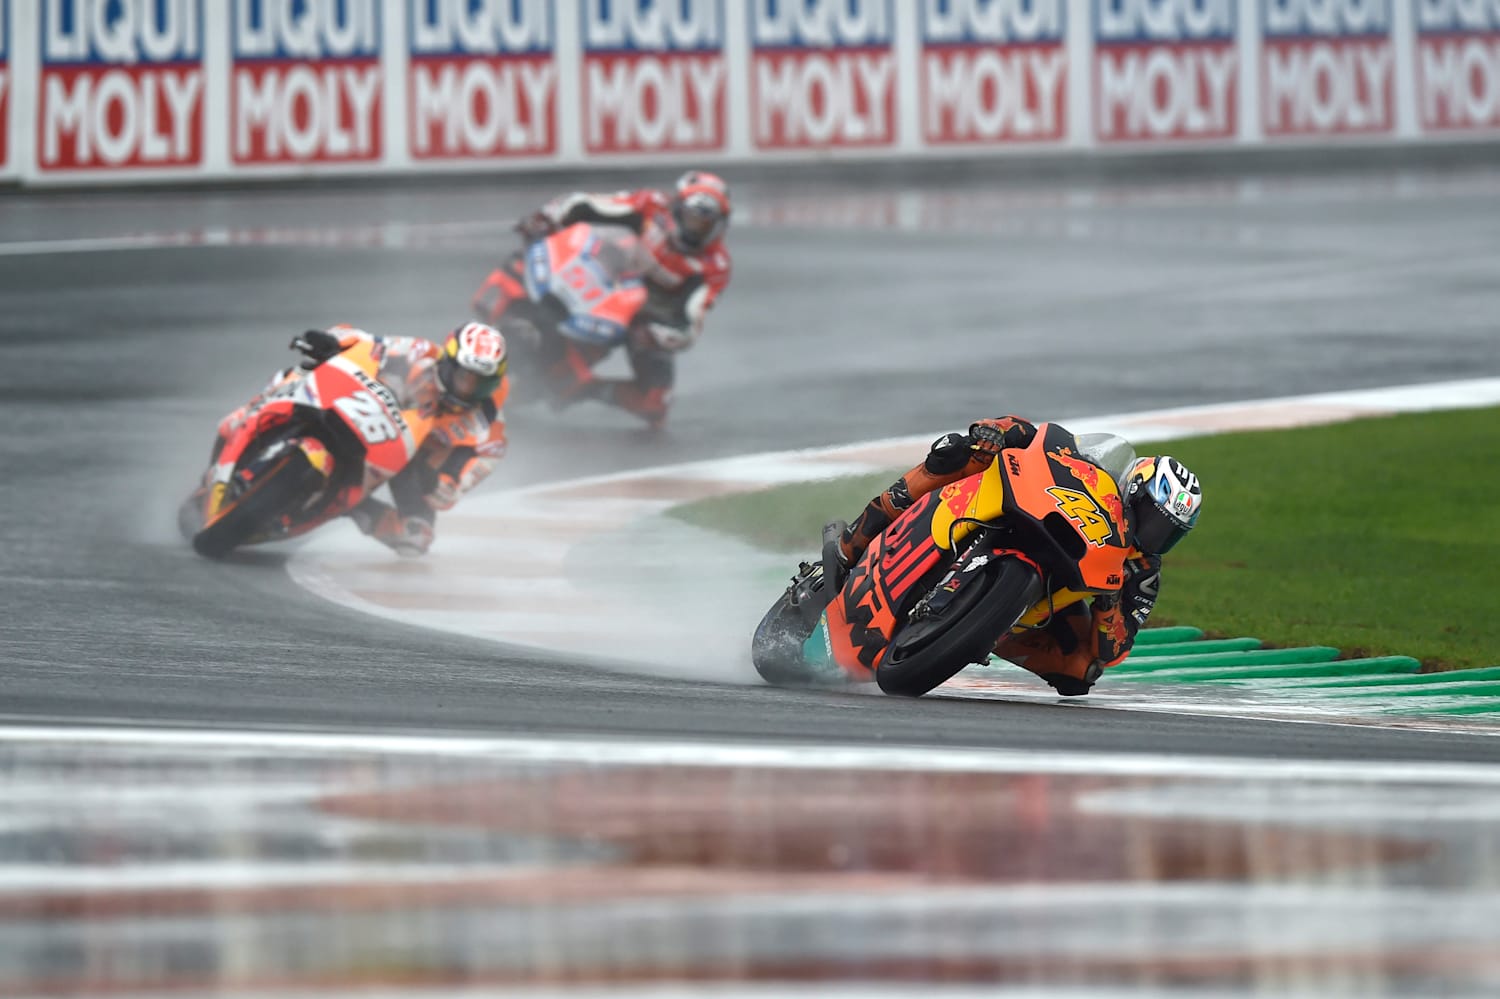 Treino na chuva, GP do seco: previsão põe MotoGP no escuro na Europa -  Notícia de MotoGP - Grande Prêmio